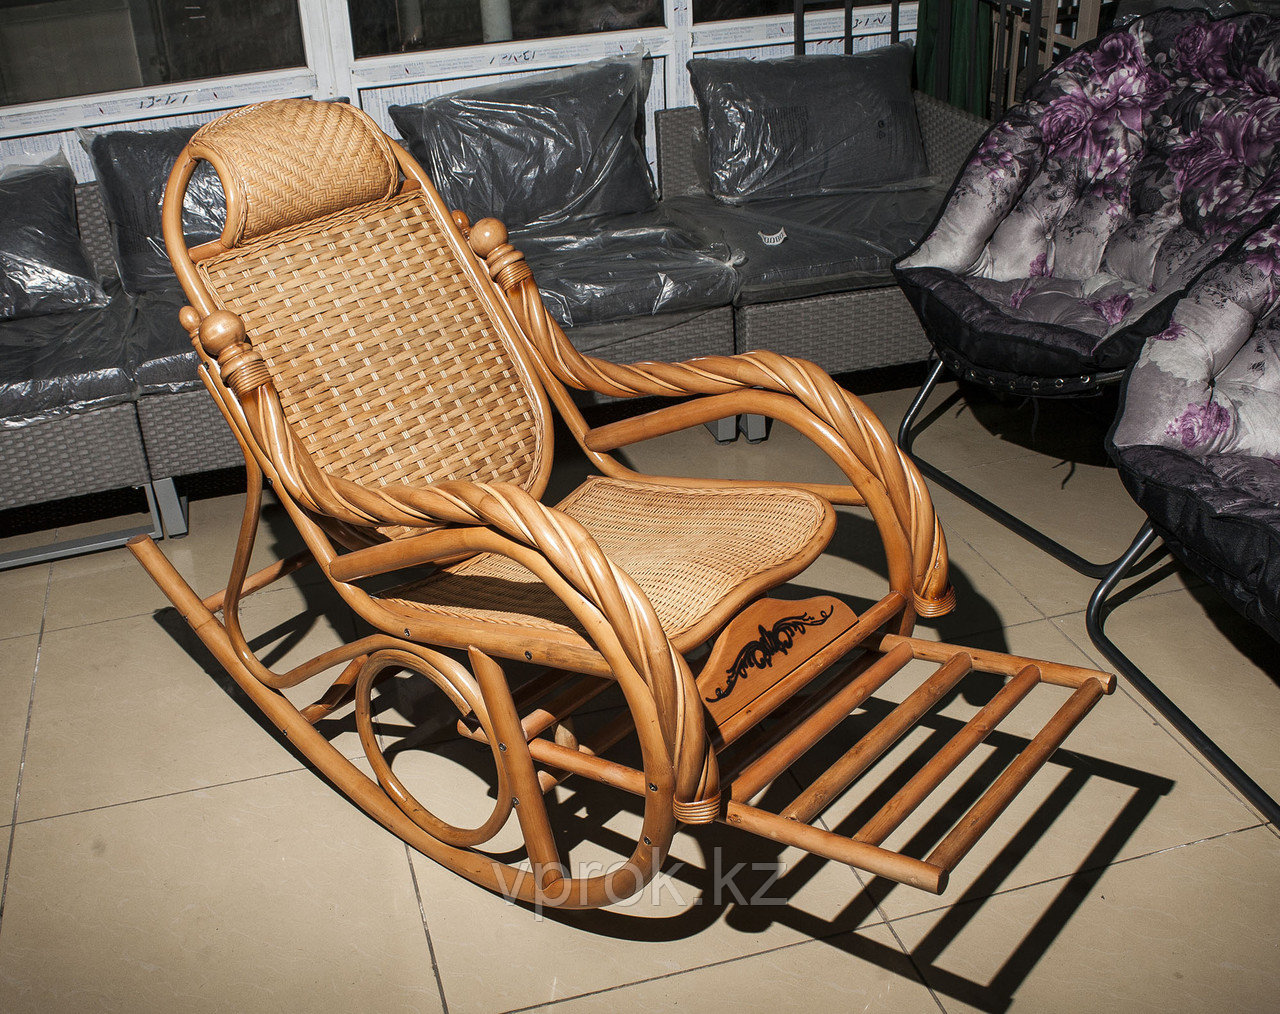 Плетеное кресло-качалка из ротанга, с выдвигающейся подножкой